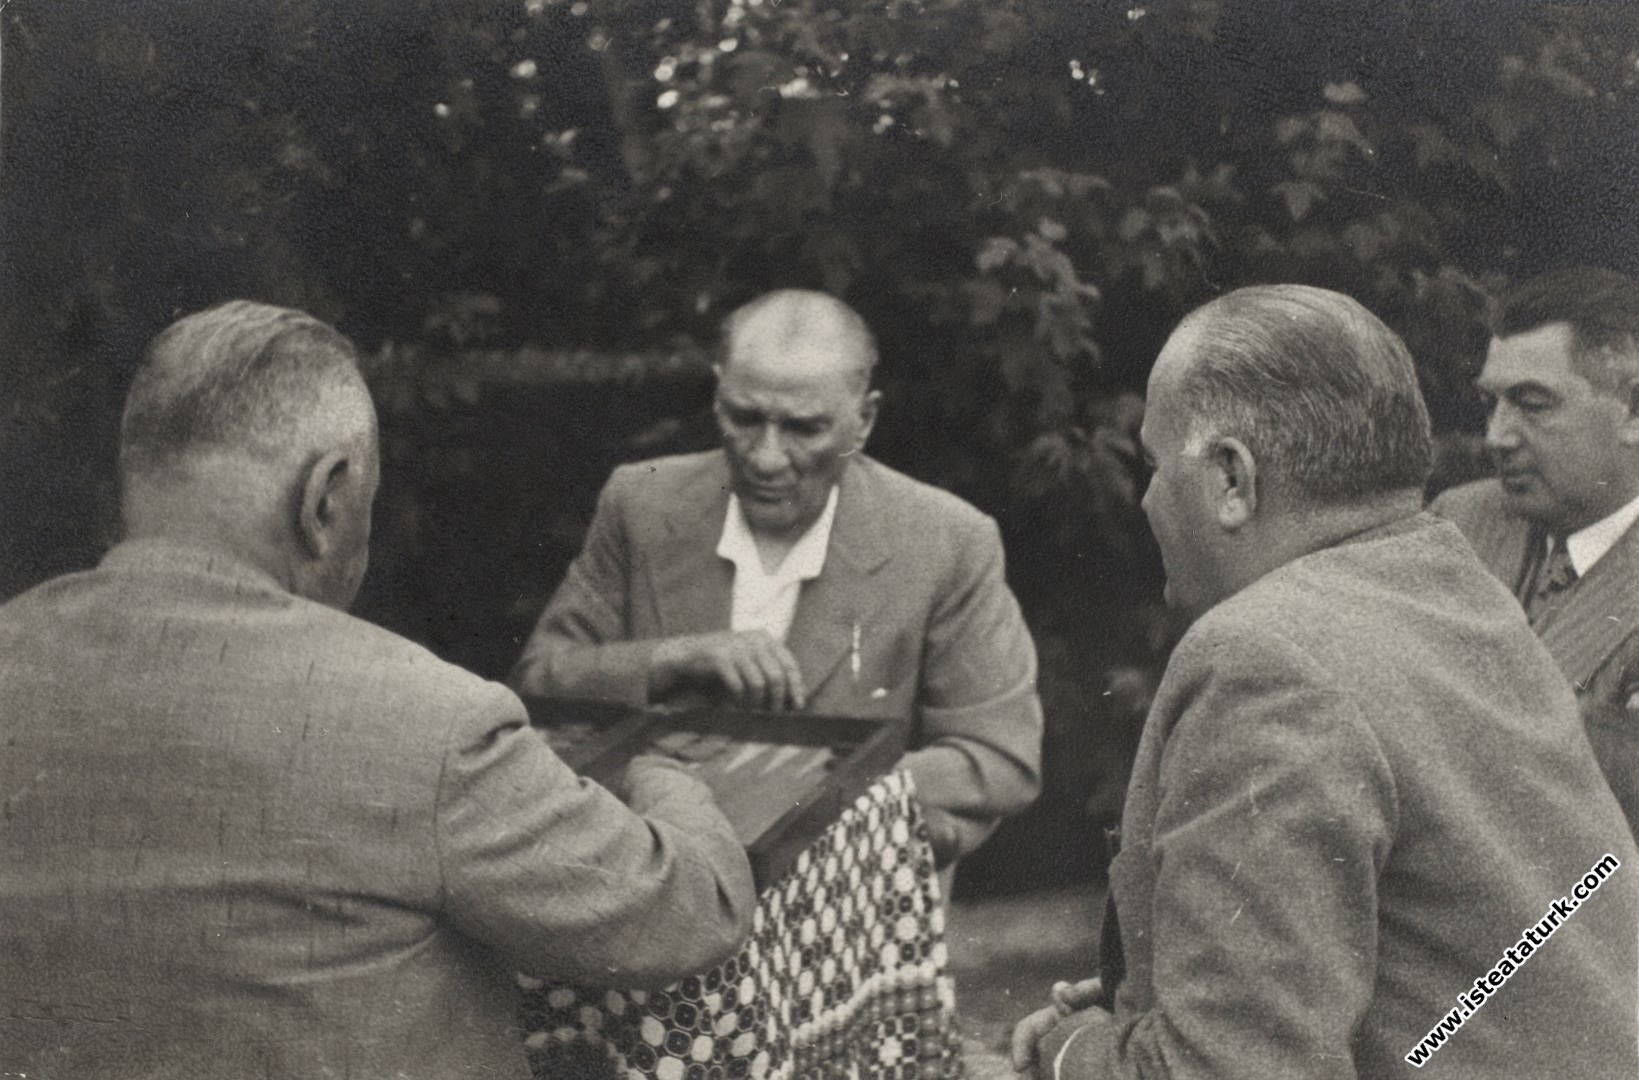 Mustafa Kemal Atatürk playing backgammon with Salih Bozok in Yalova. (21.07.1935)